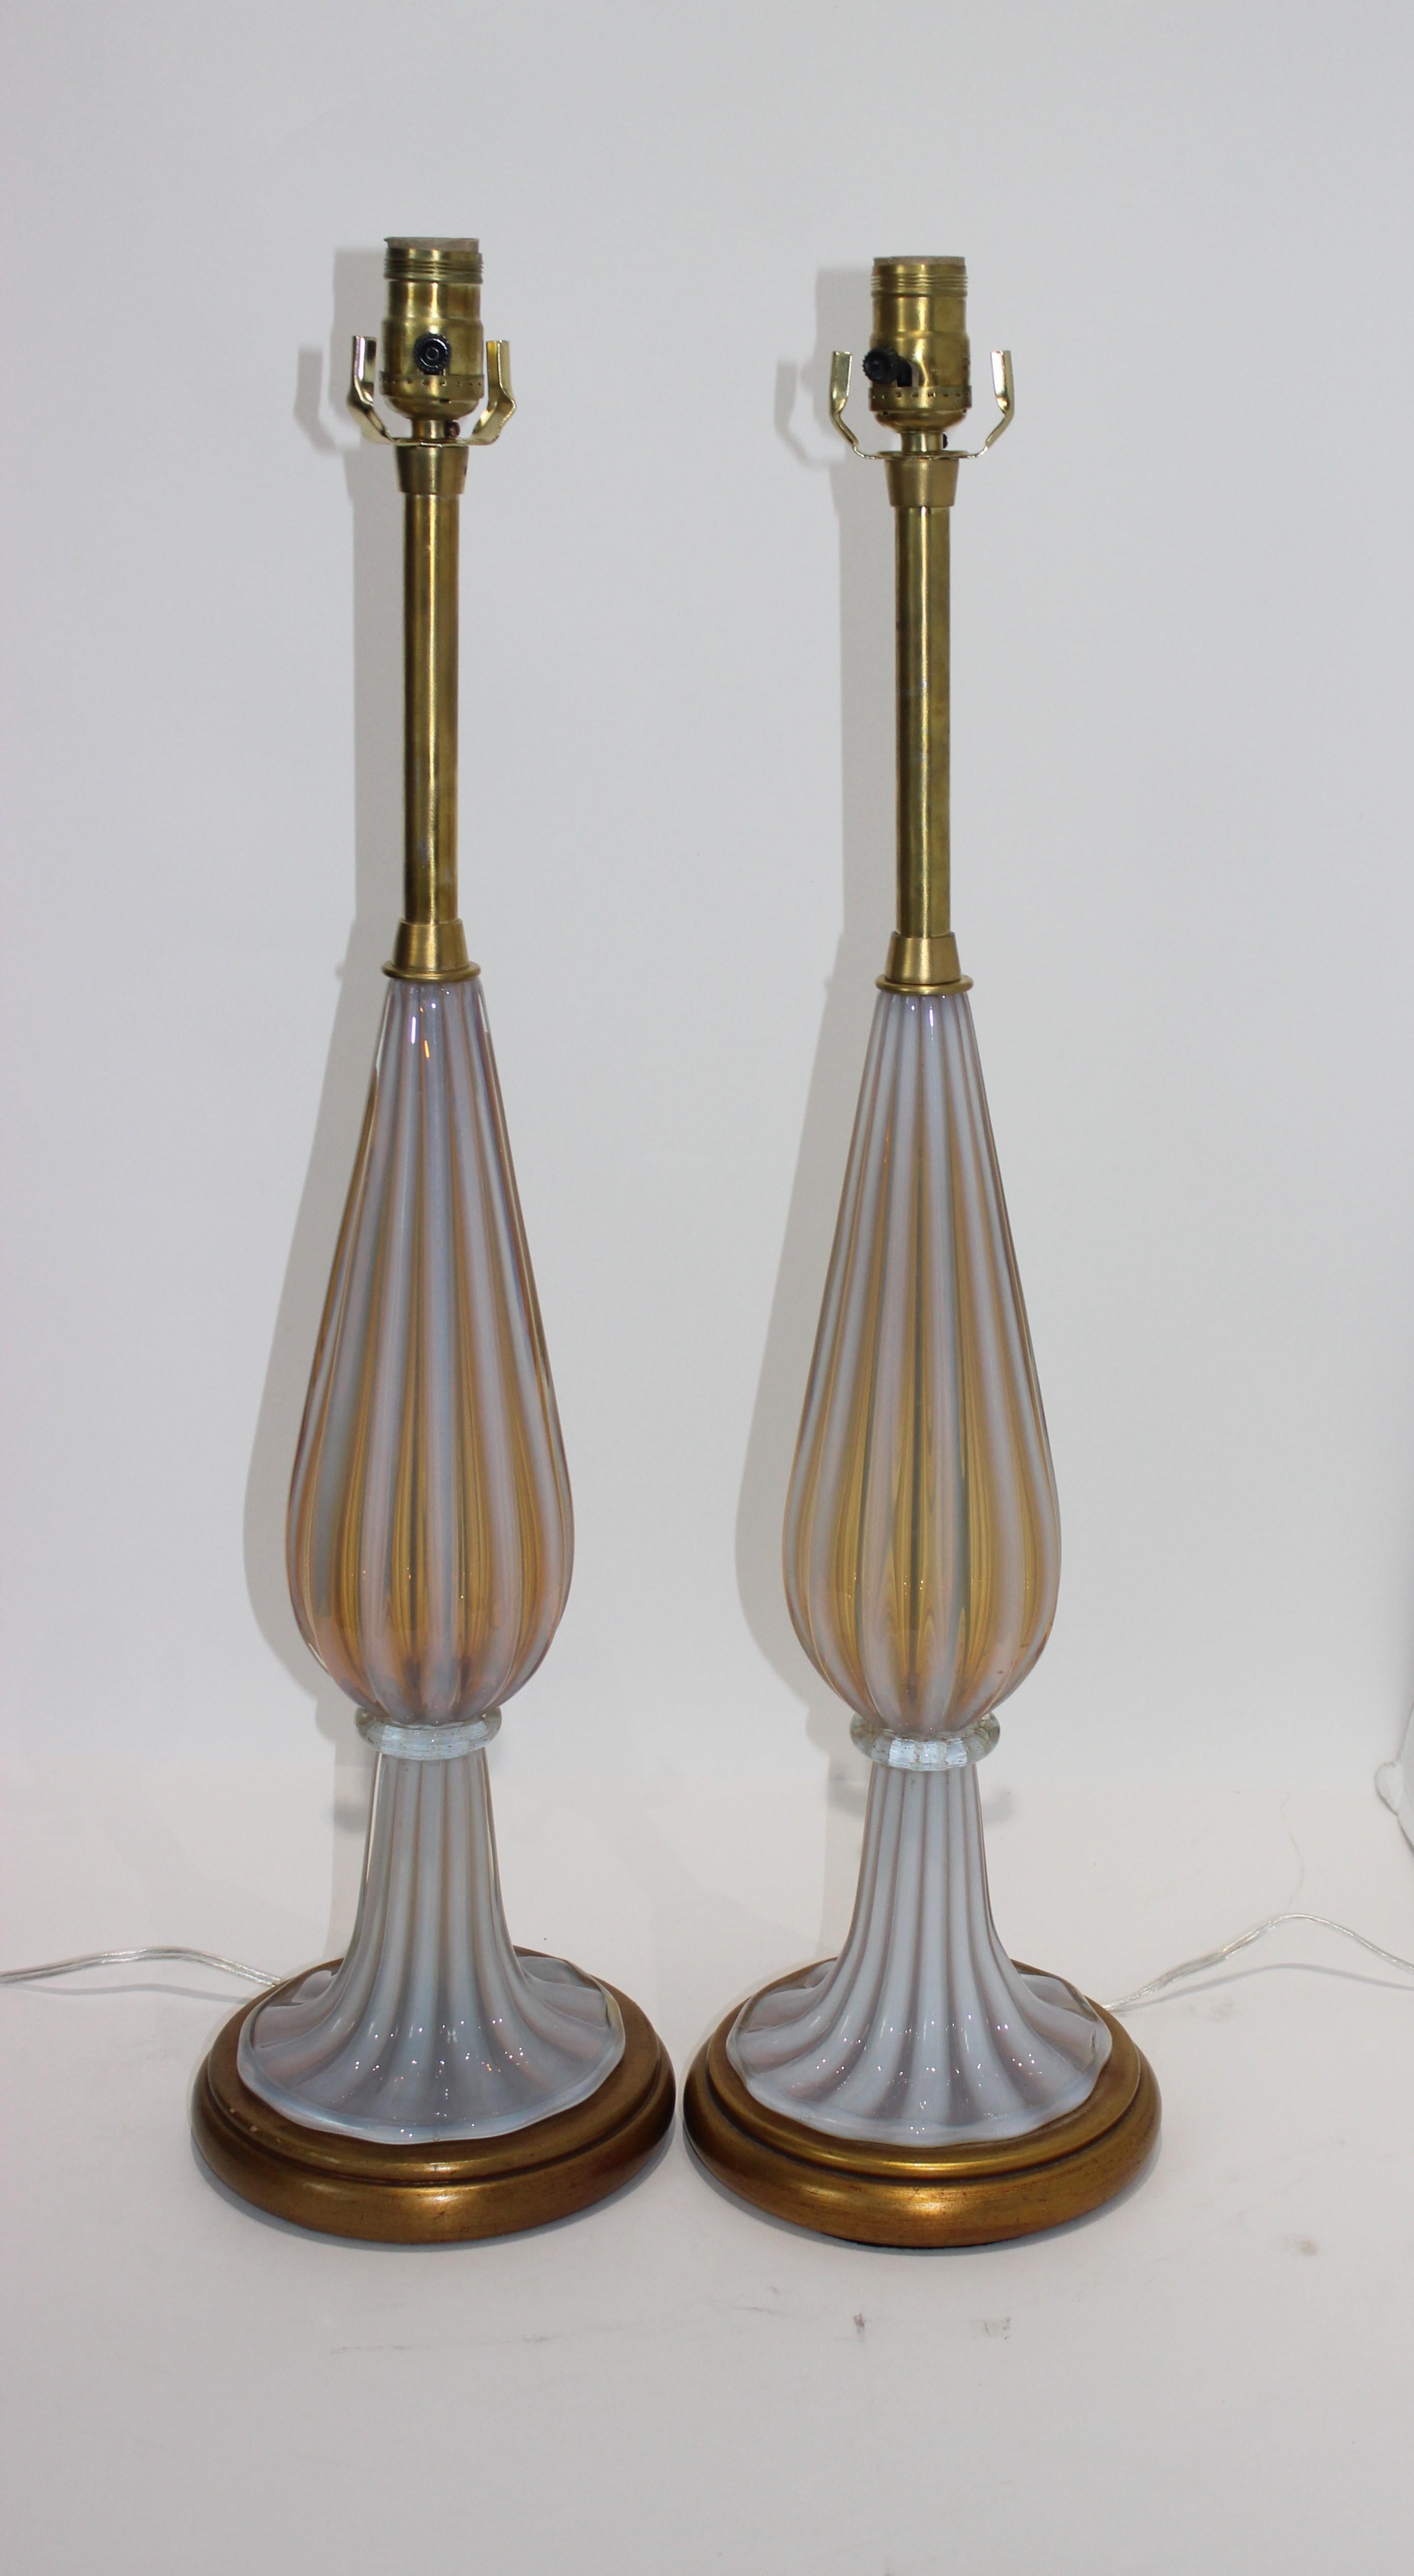 Cette élégante paire de lampes de table Marbro a été créée par Seguso (verre de Murano) pour la Marbro Lamp Company et elle date des années 1960.  La paire a été recâblée et de nouvelles prises ont été installées.  

Note :  La hauteur au sommet de